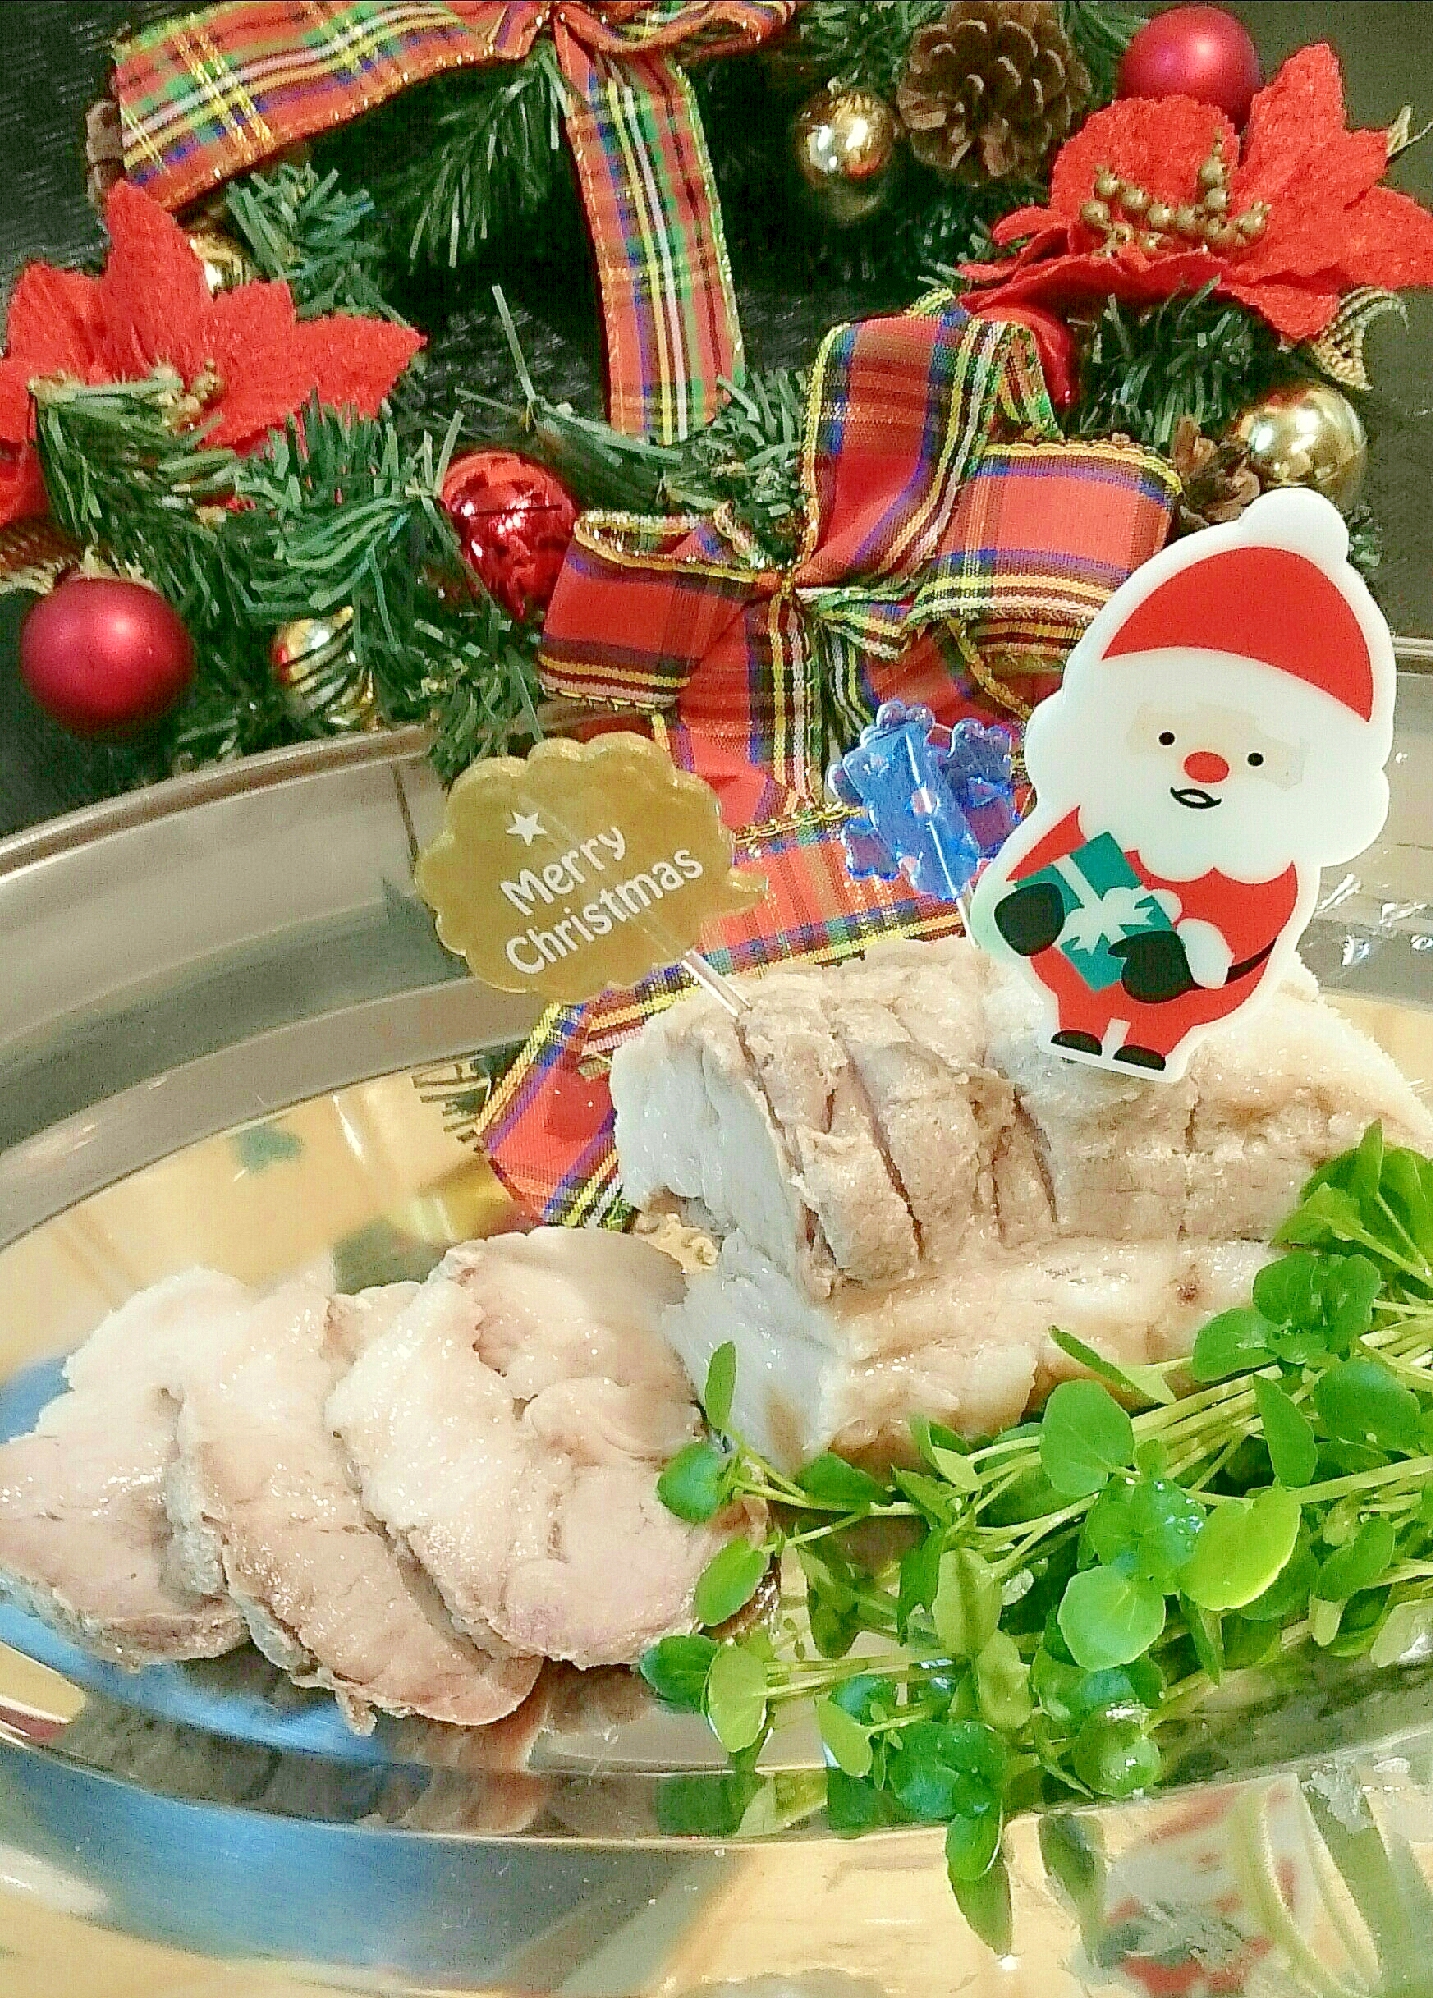 クリスマスディナー☆塩釜チャーシュー